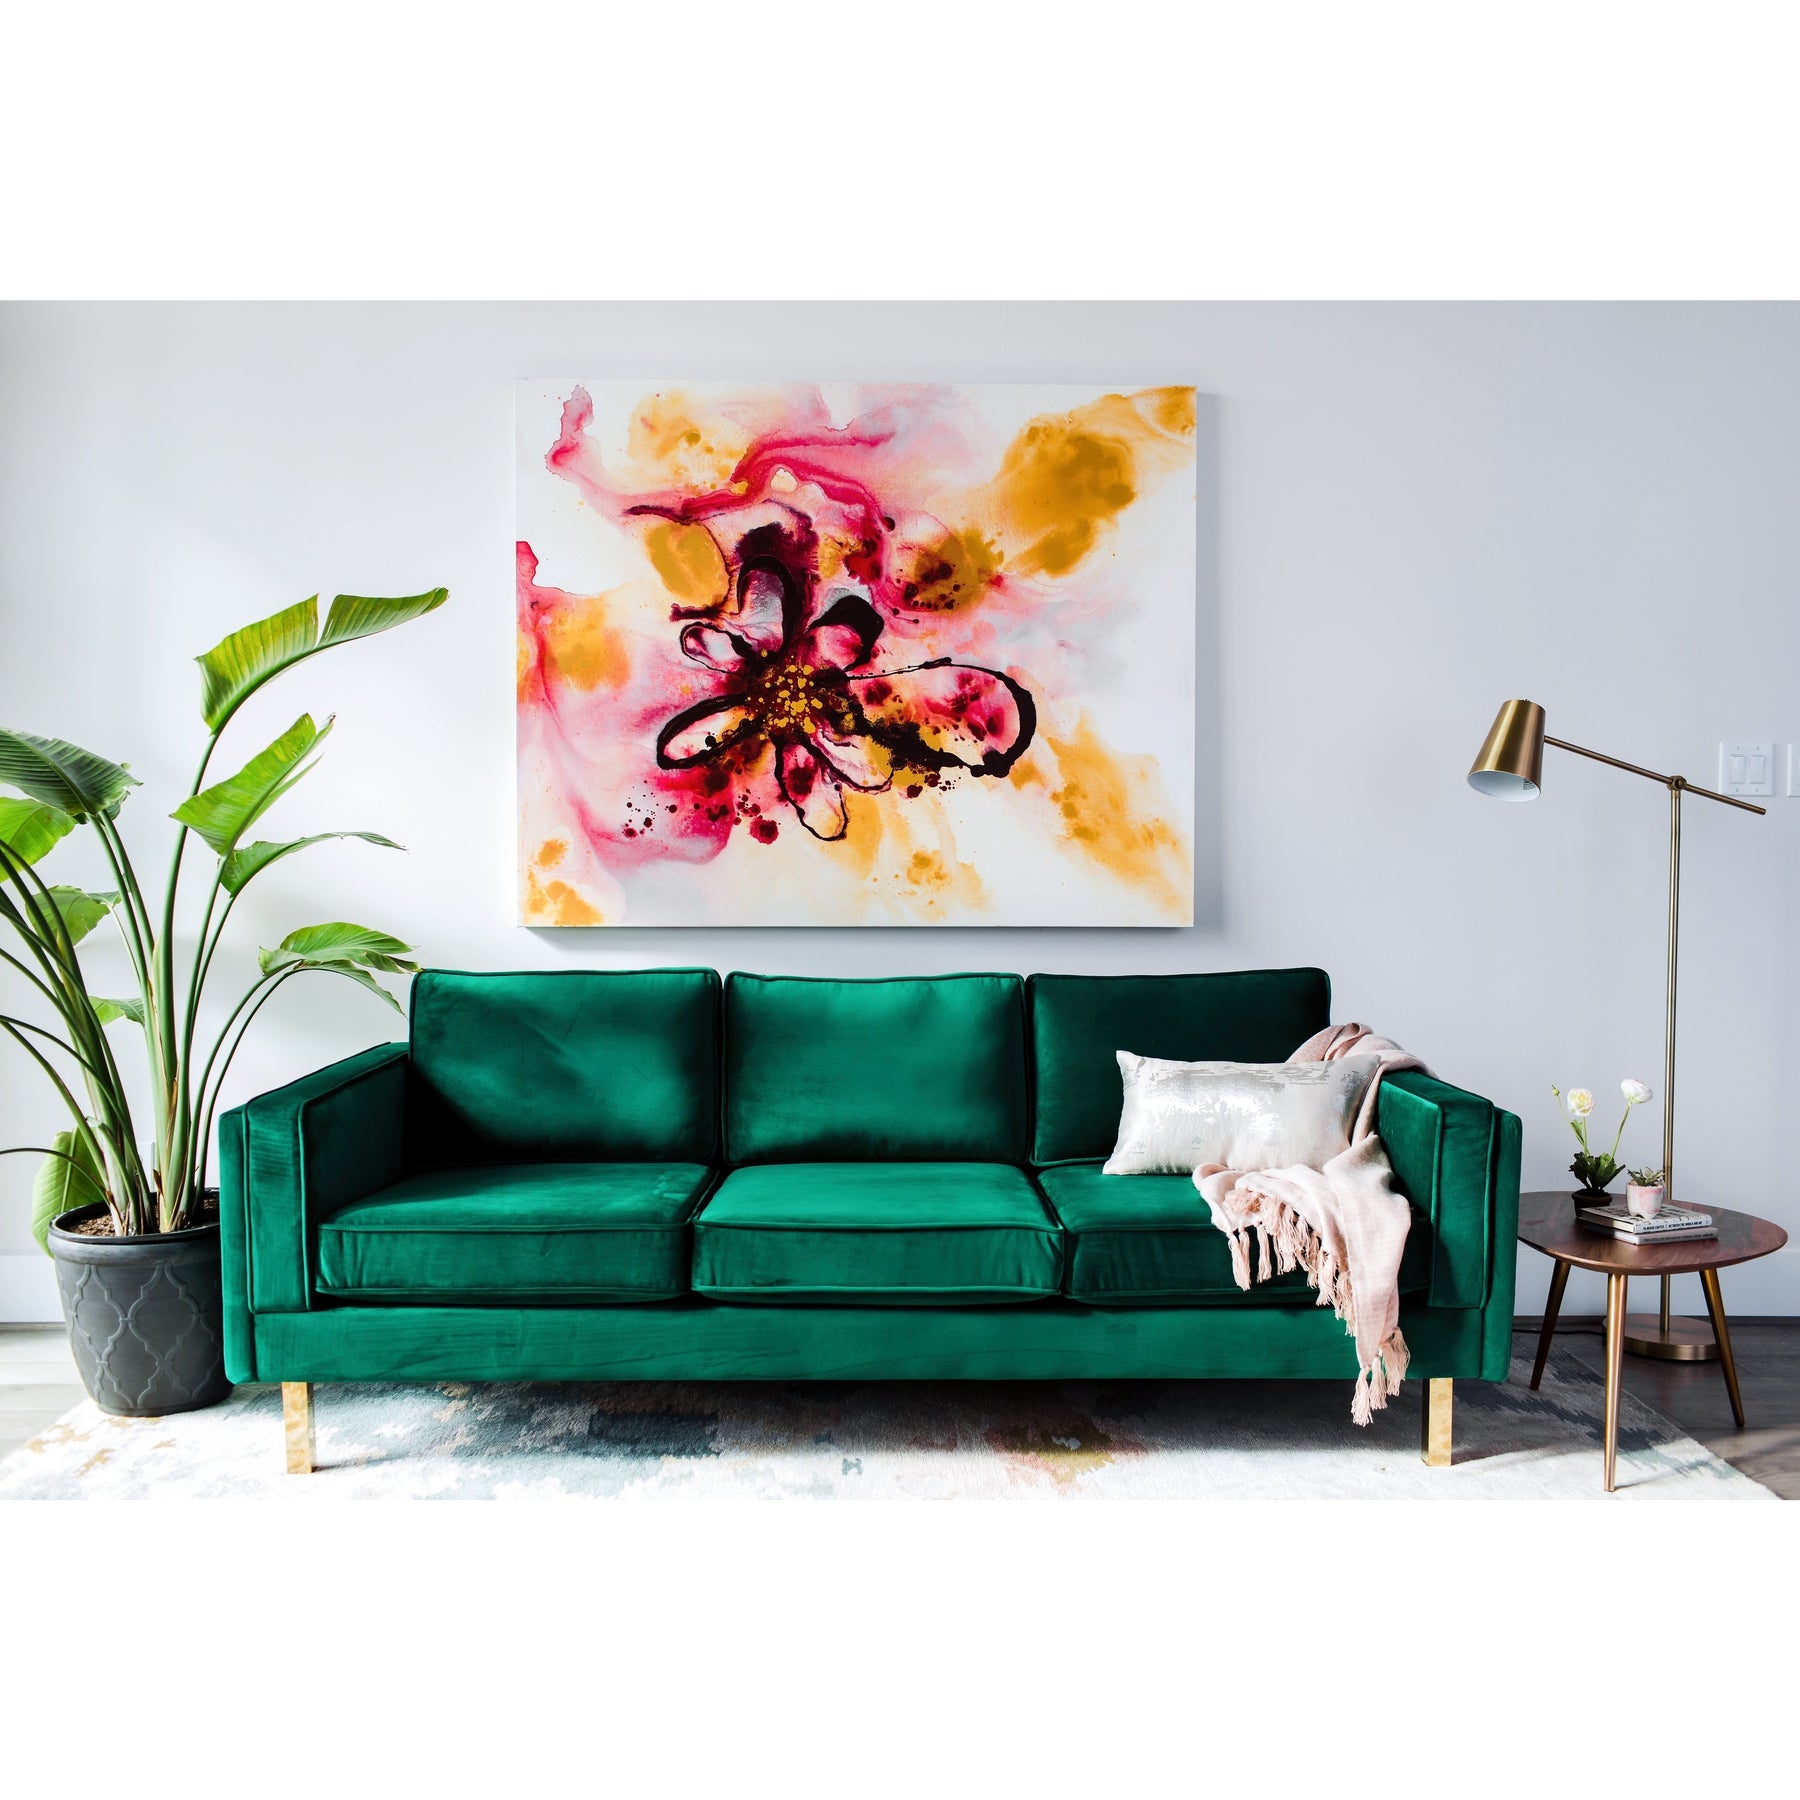 Edloe Finch Lexington Mid-Century Modern Velvet Sofa, Green Velvet